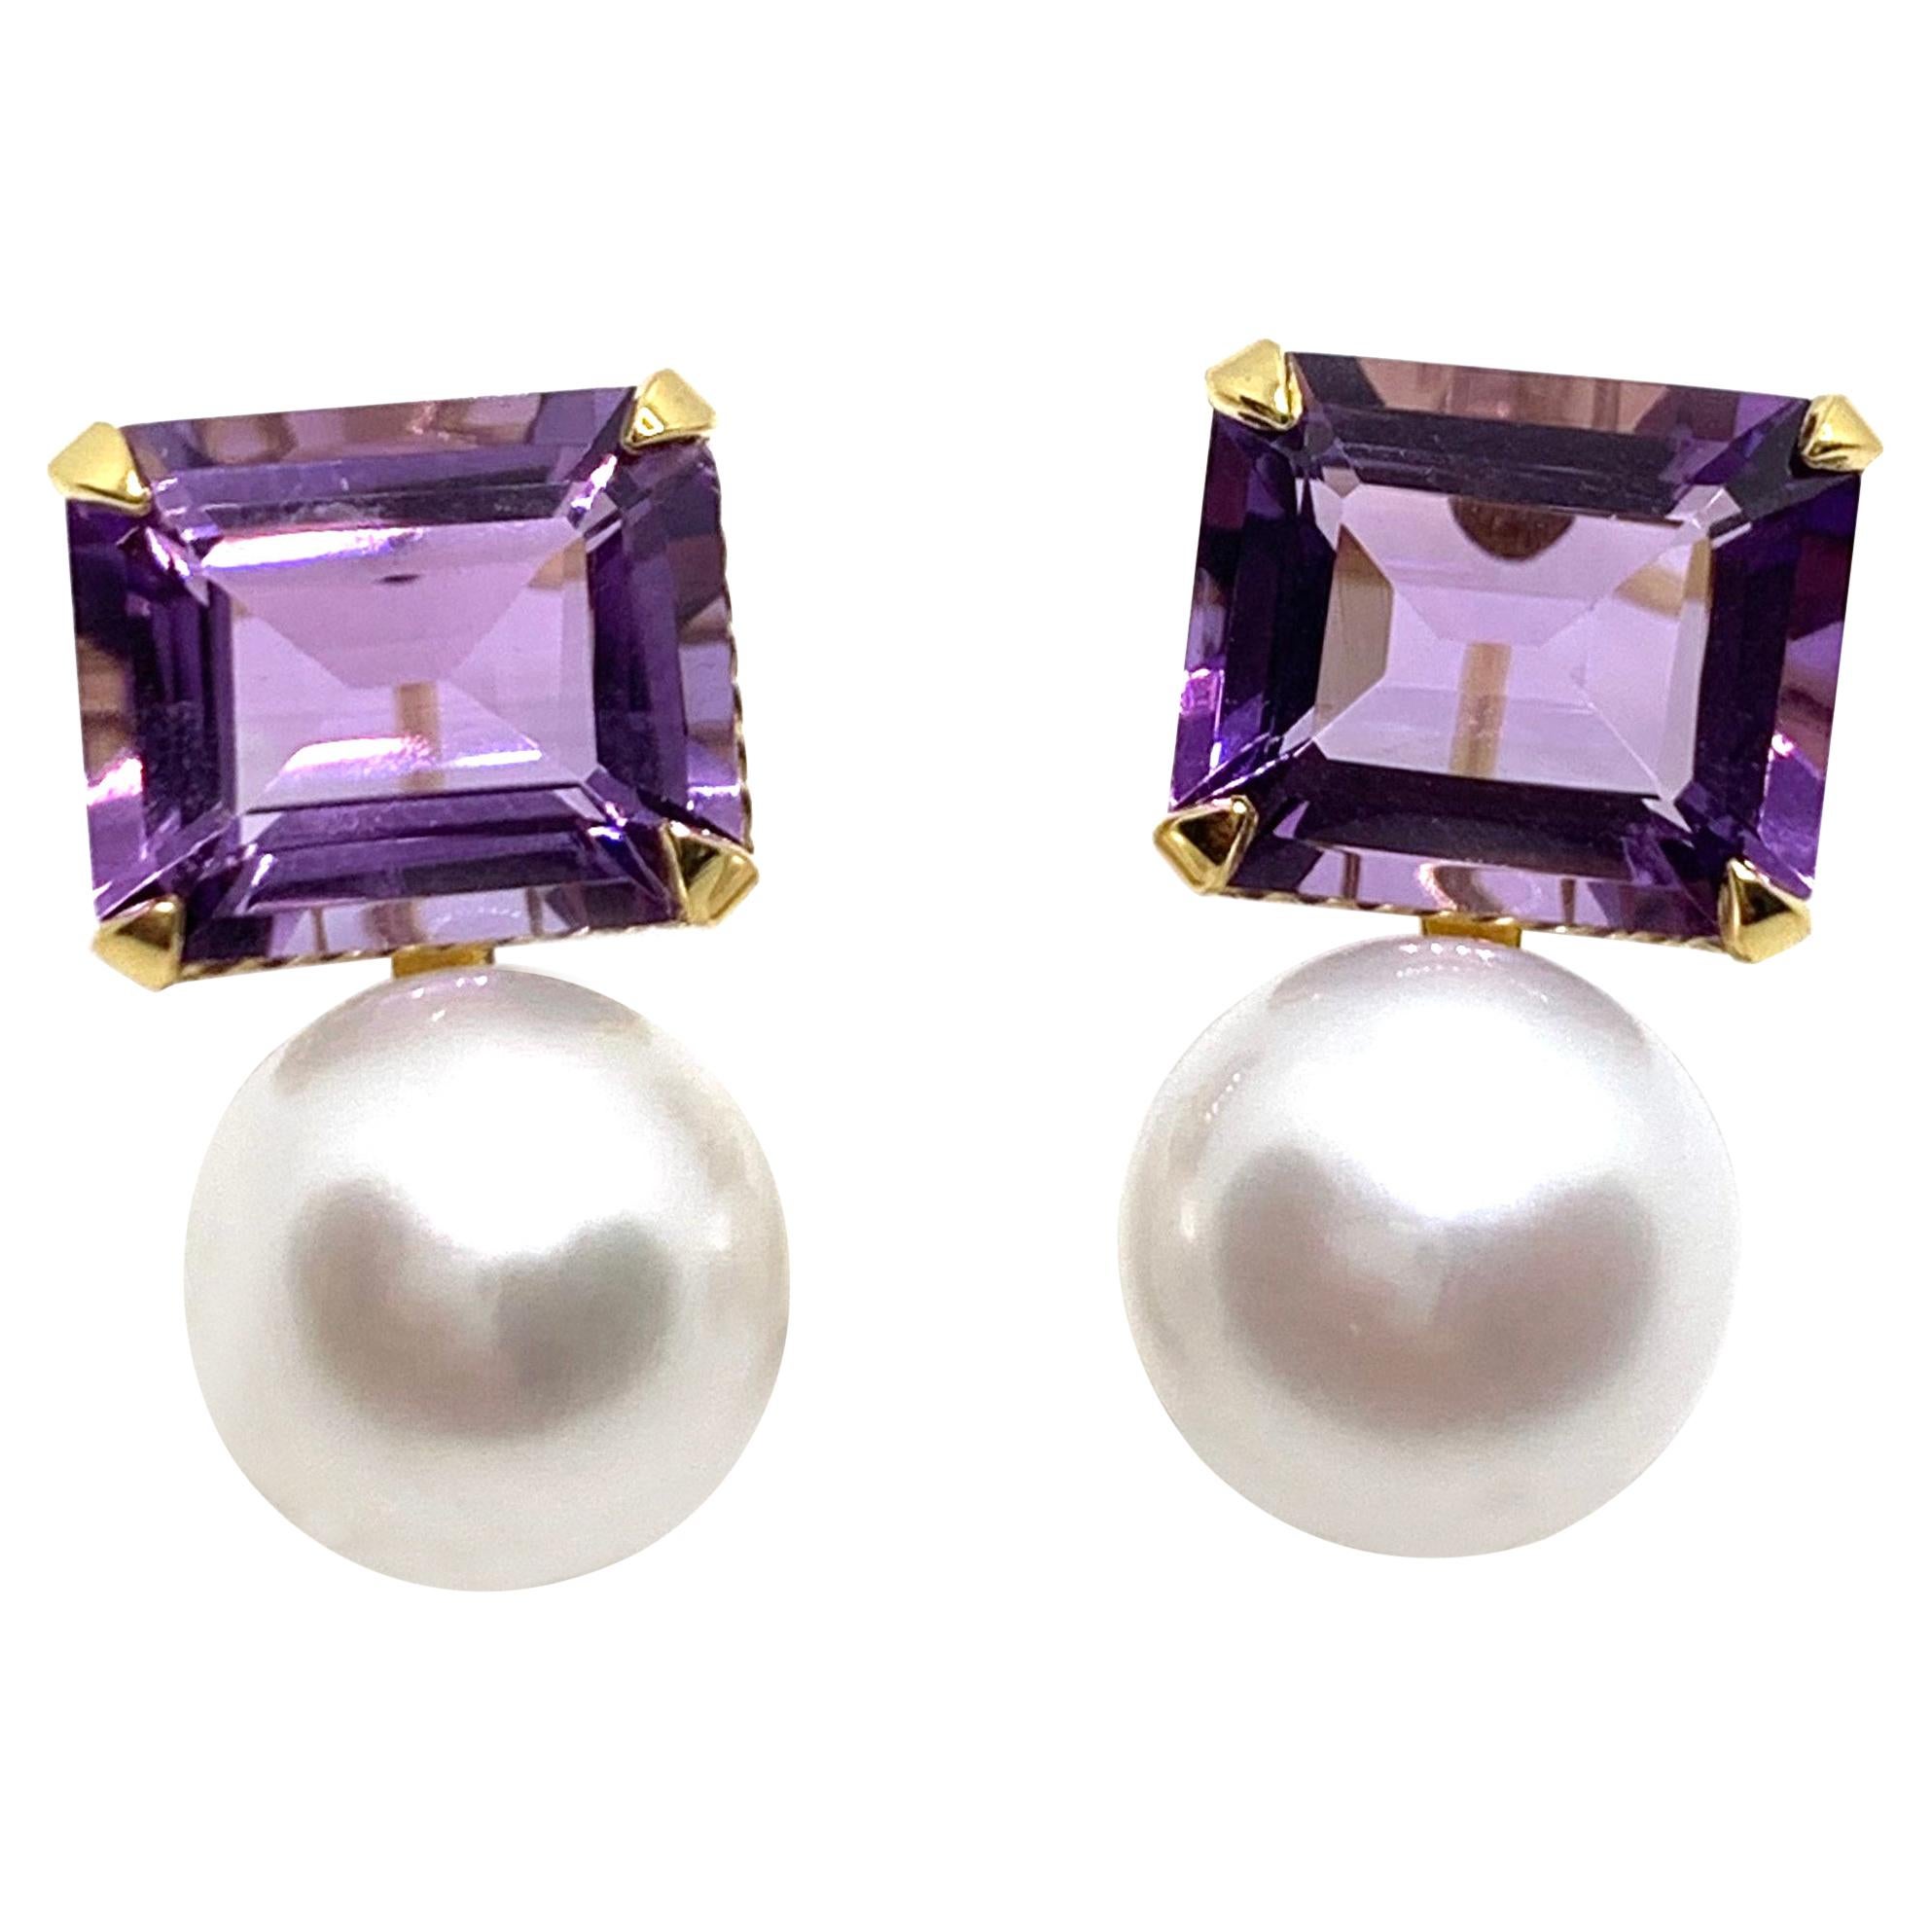 Sofia Earrings Akoya Pearl Gold vermeil Rhodolite Garnet Jewellery Earrings Chandelier Earrings 